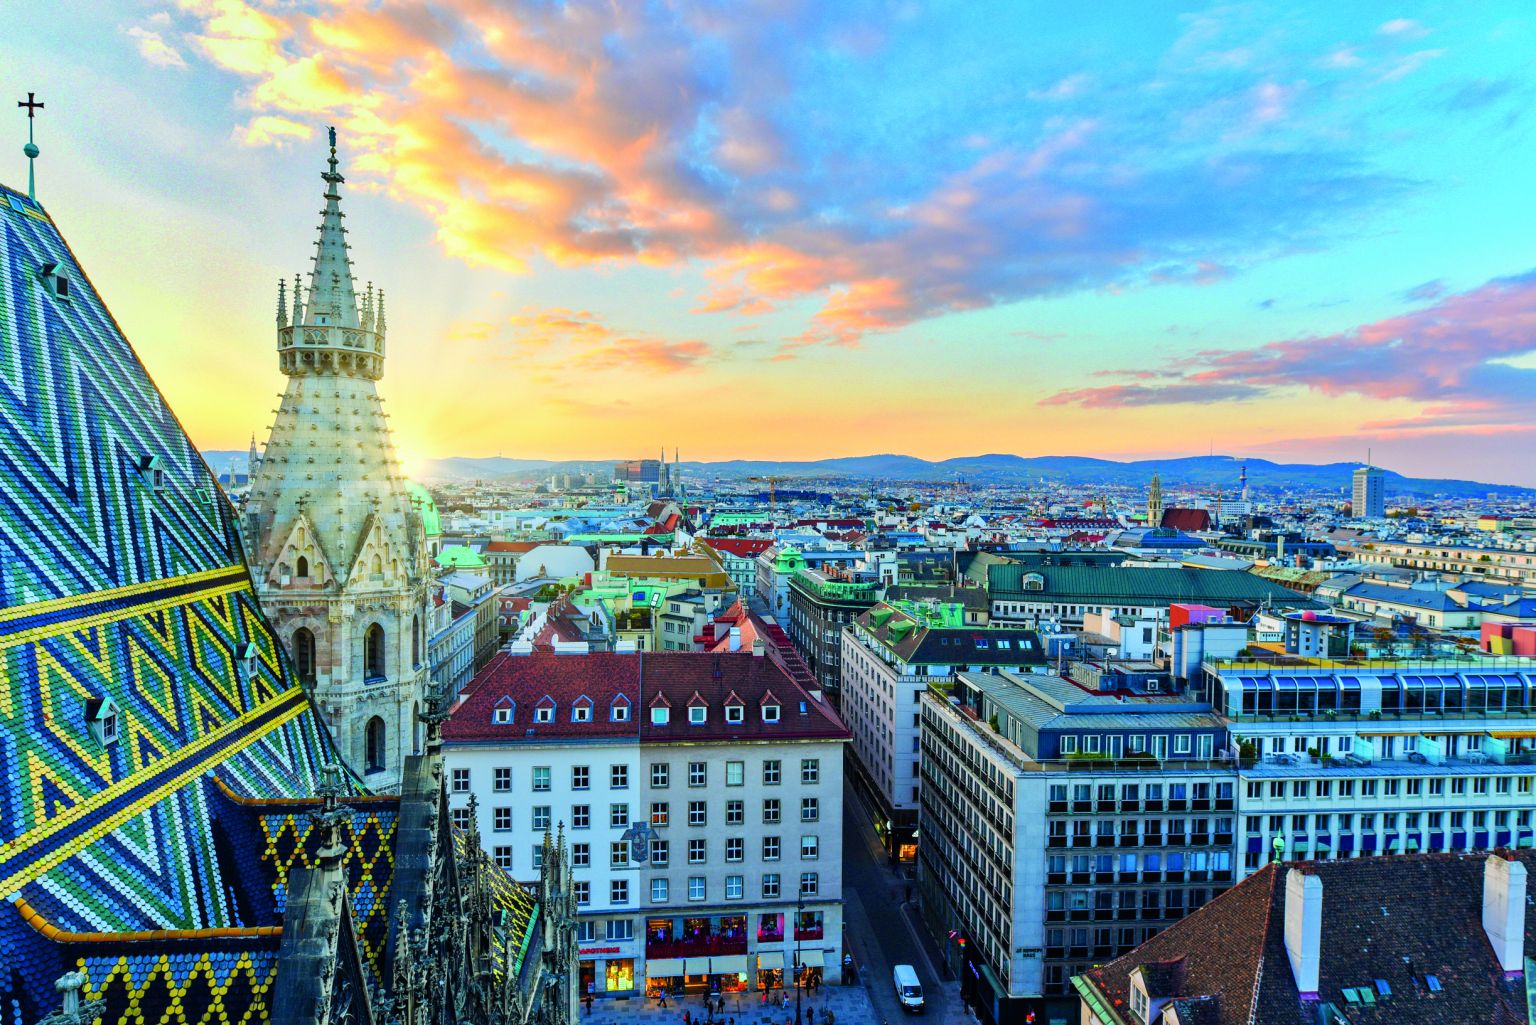 Büromarkt Wien: Größte Vermietung für rund 25 Prozent der Vermietungsleistung verantwortlich